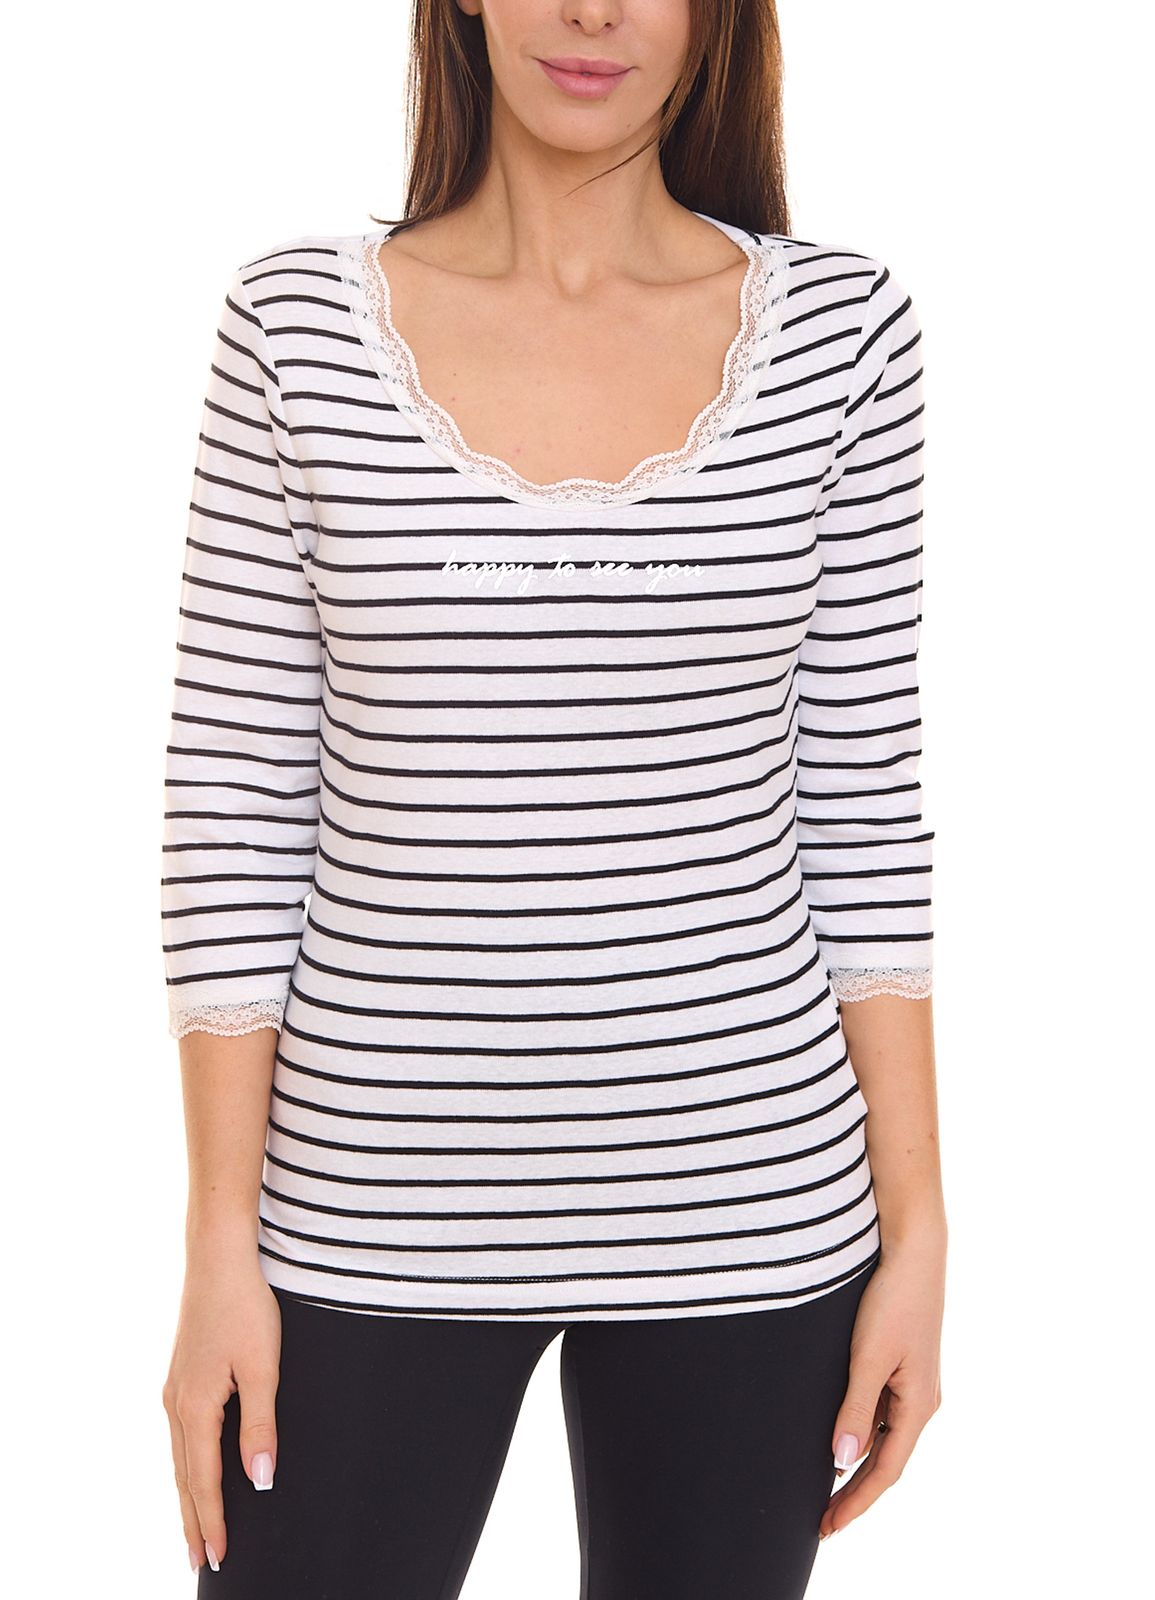 KangaROOS Damen Sweatshirt mit Spitzenbesatz 3/4-Arm Sommer-Shirt 68605155 Weiß/Schwarz von KangaROOS